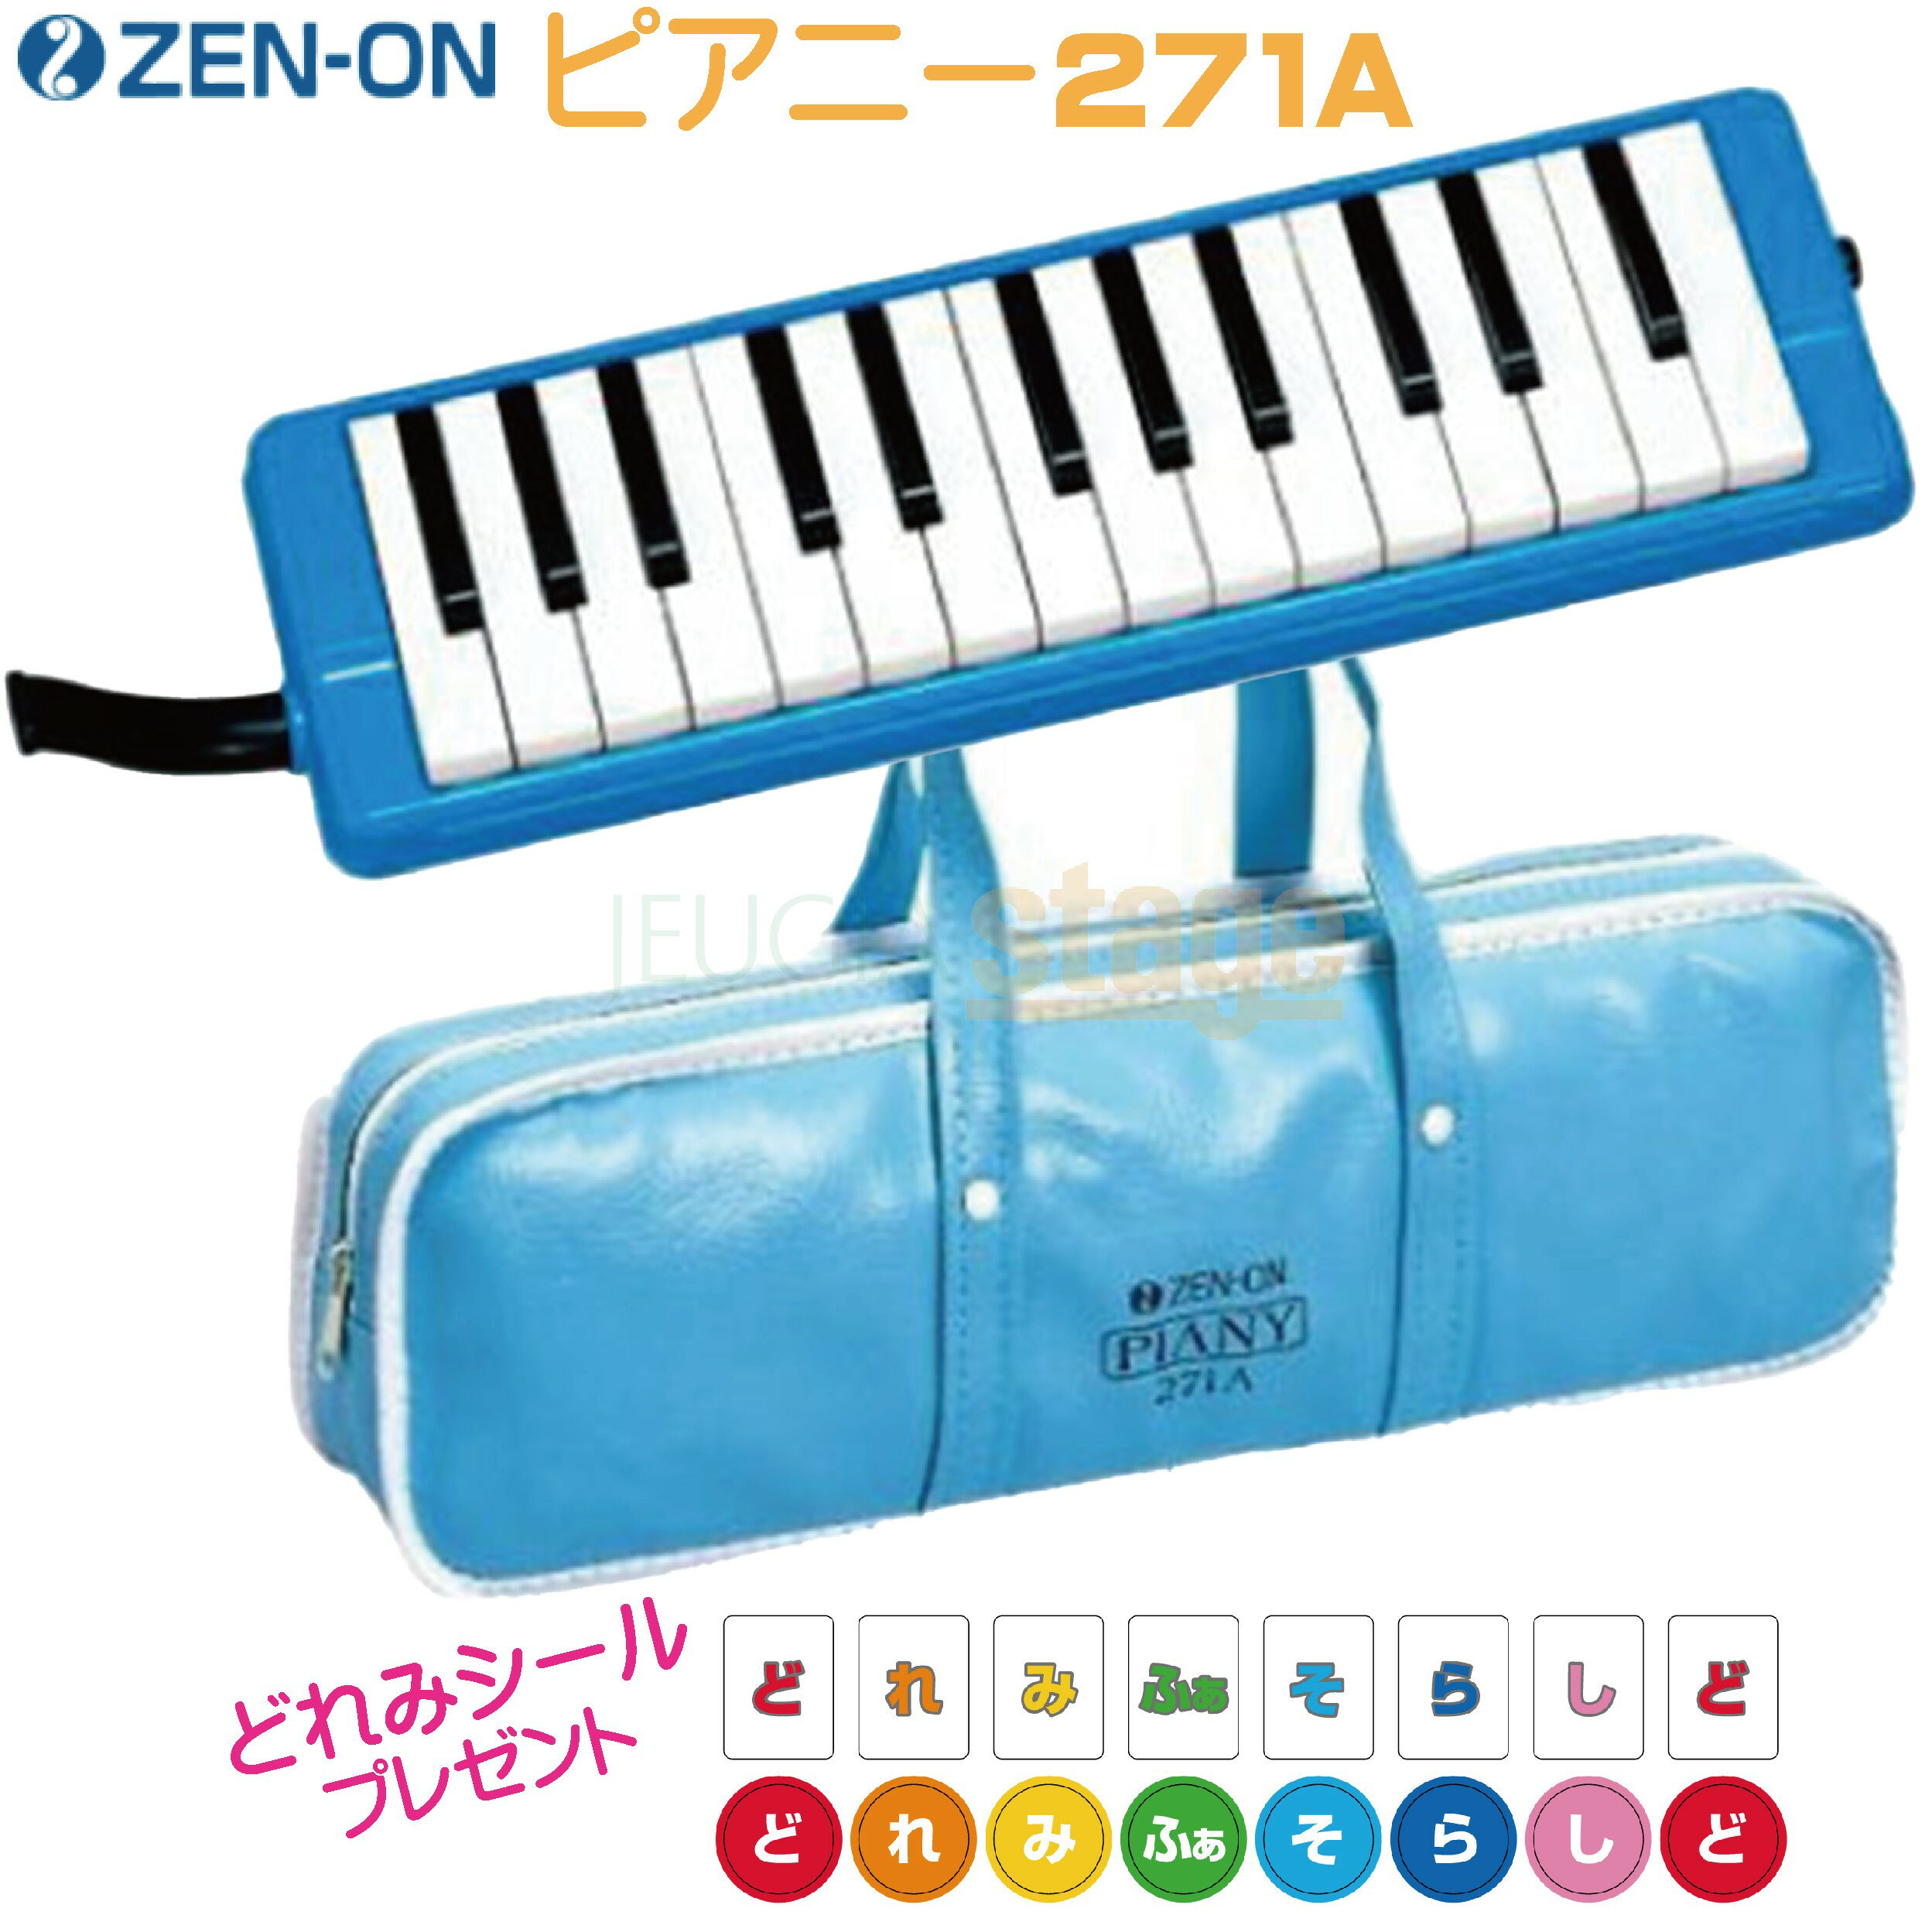 ZEN-ON 271A 仕様 明るい音色で、ユニゾンが美しい鍵盤ハーモニカf-g2の音域です。小型、軽量なので子供さんが取り扱いやすくなっています。 【仕様】 ■27鍵（f～g2）アルト ■ピッチ：A＝442Hz ■付属品：ソフトケース、卓奏用唄口（パイプセット）、立奏用唄口 　■寸法：350（W）×105（D）×45（H）mm ■重量：550g（本体のみ）、750g（ケース、付属品含む） 　【全音ピアニー323AH BLUE購入をお考えの方はこちらから】　 　【全音ピアニー323AH GREEN購入をお考えの方はこちらから】　 ※衛生上の問題がございますので、不良品以外の返品・交換は一切お受けいたしませんので予めご了承ください。 ご購入前にメーカーサイト等で事前に詳細を必ず確認のうえご購入下さいます様お願い致します。 ※商品画像はサンプルです。 ★掲載の商品は店頭や他のECサイトでも並行して販売しております。在庫情報の更新には最大限の努力をしておりますが、ご注文が完了しましても売り切れでご用意できない場合がございます。 　また、お取り寄せ商品の場合、生産完了・メーカー価格改定などの理由でご用意できない場合がございます。 　その際はご注文をキャンセルさせていただきますので、予めご了承くださいませ。 ★お届け先が北海道や沖縄、その他離島の場合、「送料無料」と表記の商品であっても別途中継料や送料を頂戴いたします。その際は改めてご連絡を差し上げますのでご了承ください。　